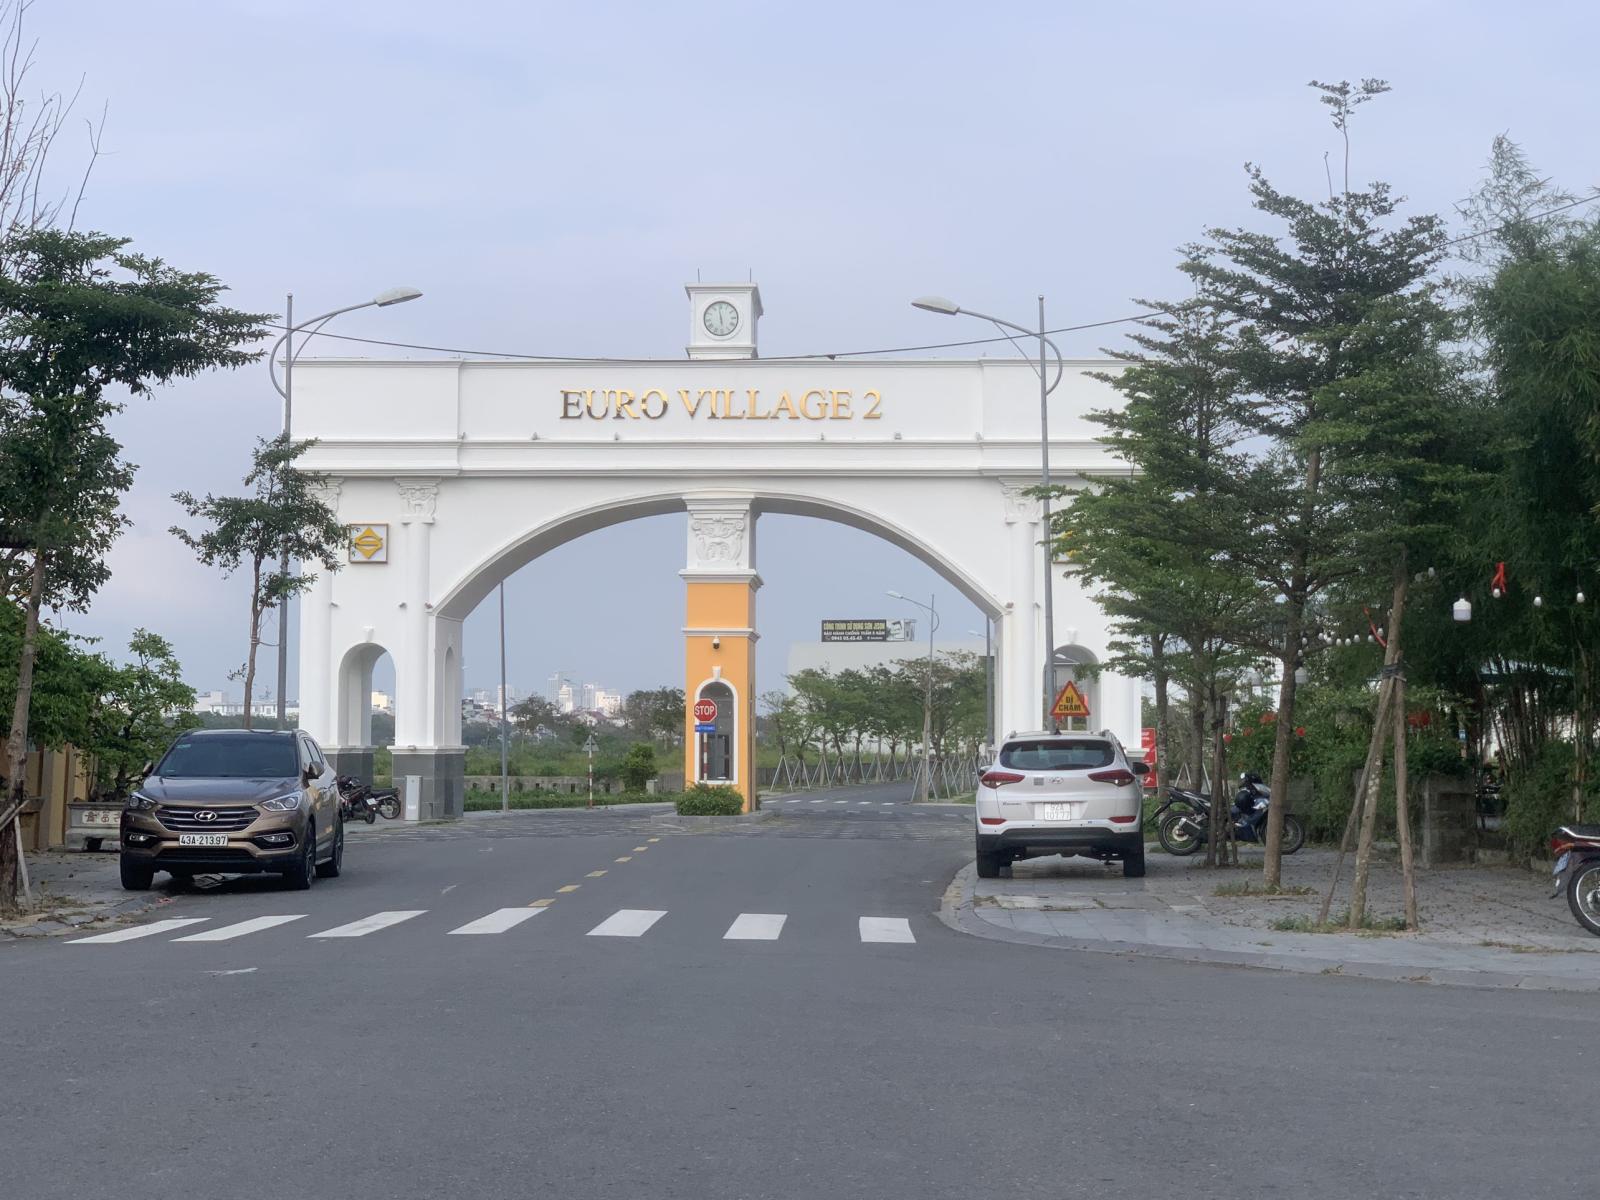 Bán đất biệt thự Euro Village 2 Đà Nẵng view kênh siêu đẹp 300m2 giá chỉ 65 triệu/m2